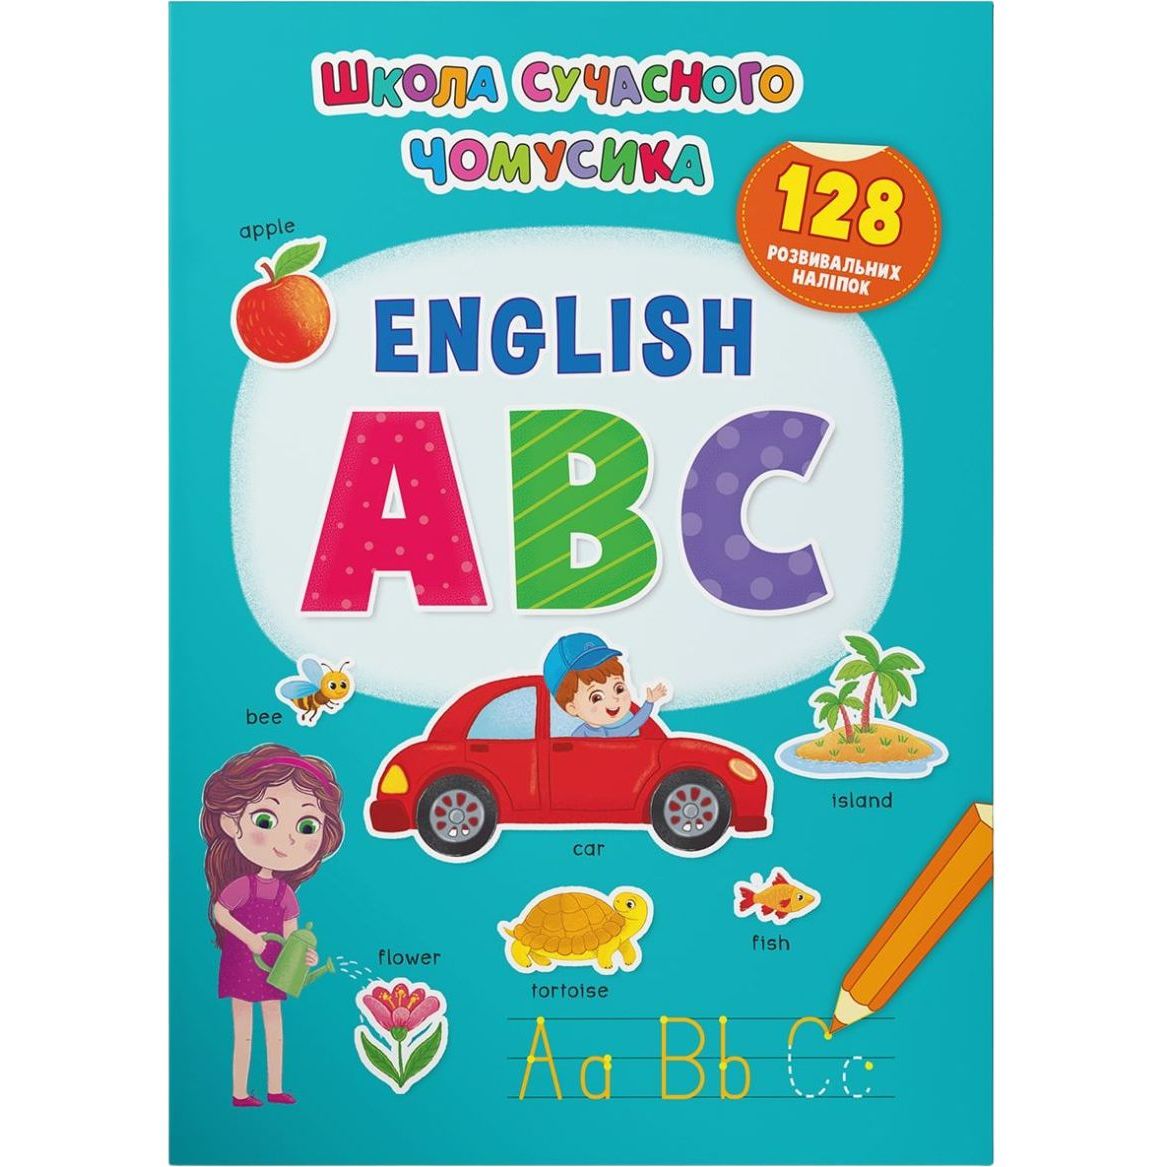 Книга Кристал Бук Школа сучасного чомусика English ABC, 128 розвиваючих наліпок (F00029943) - фото 1